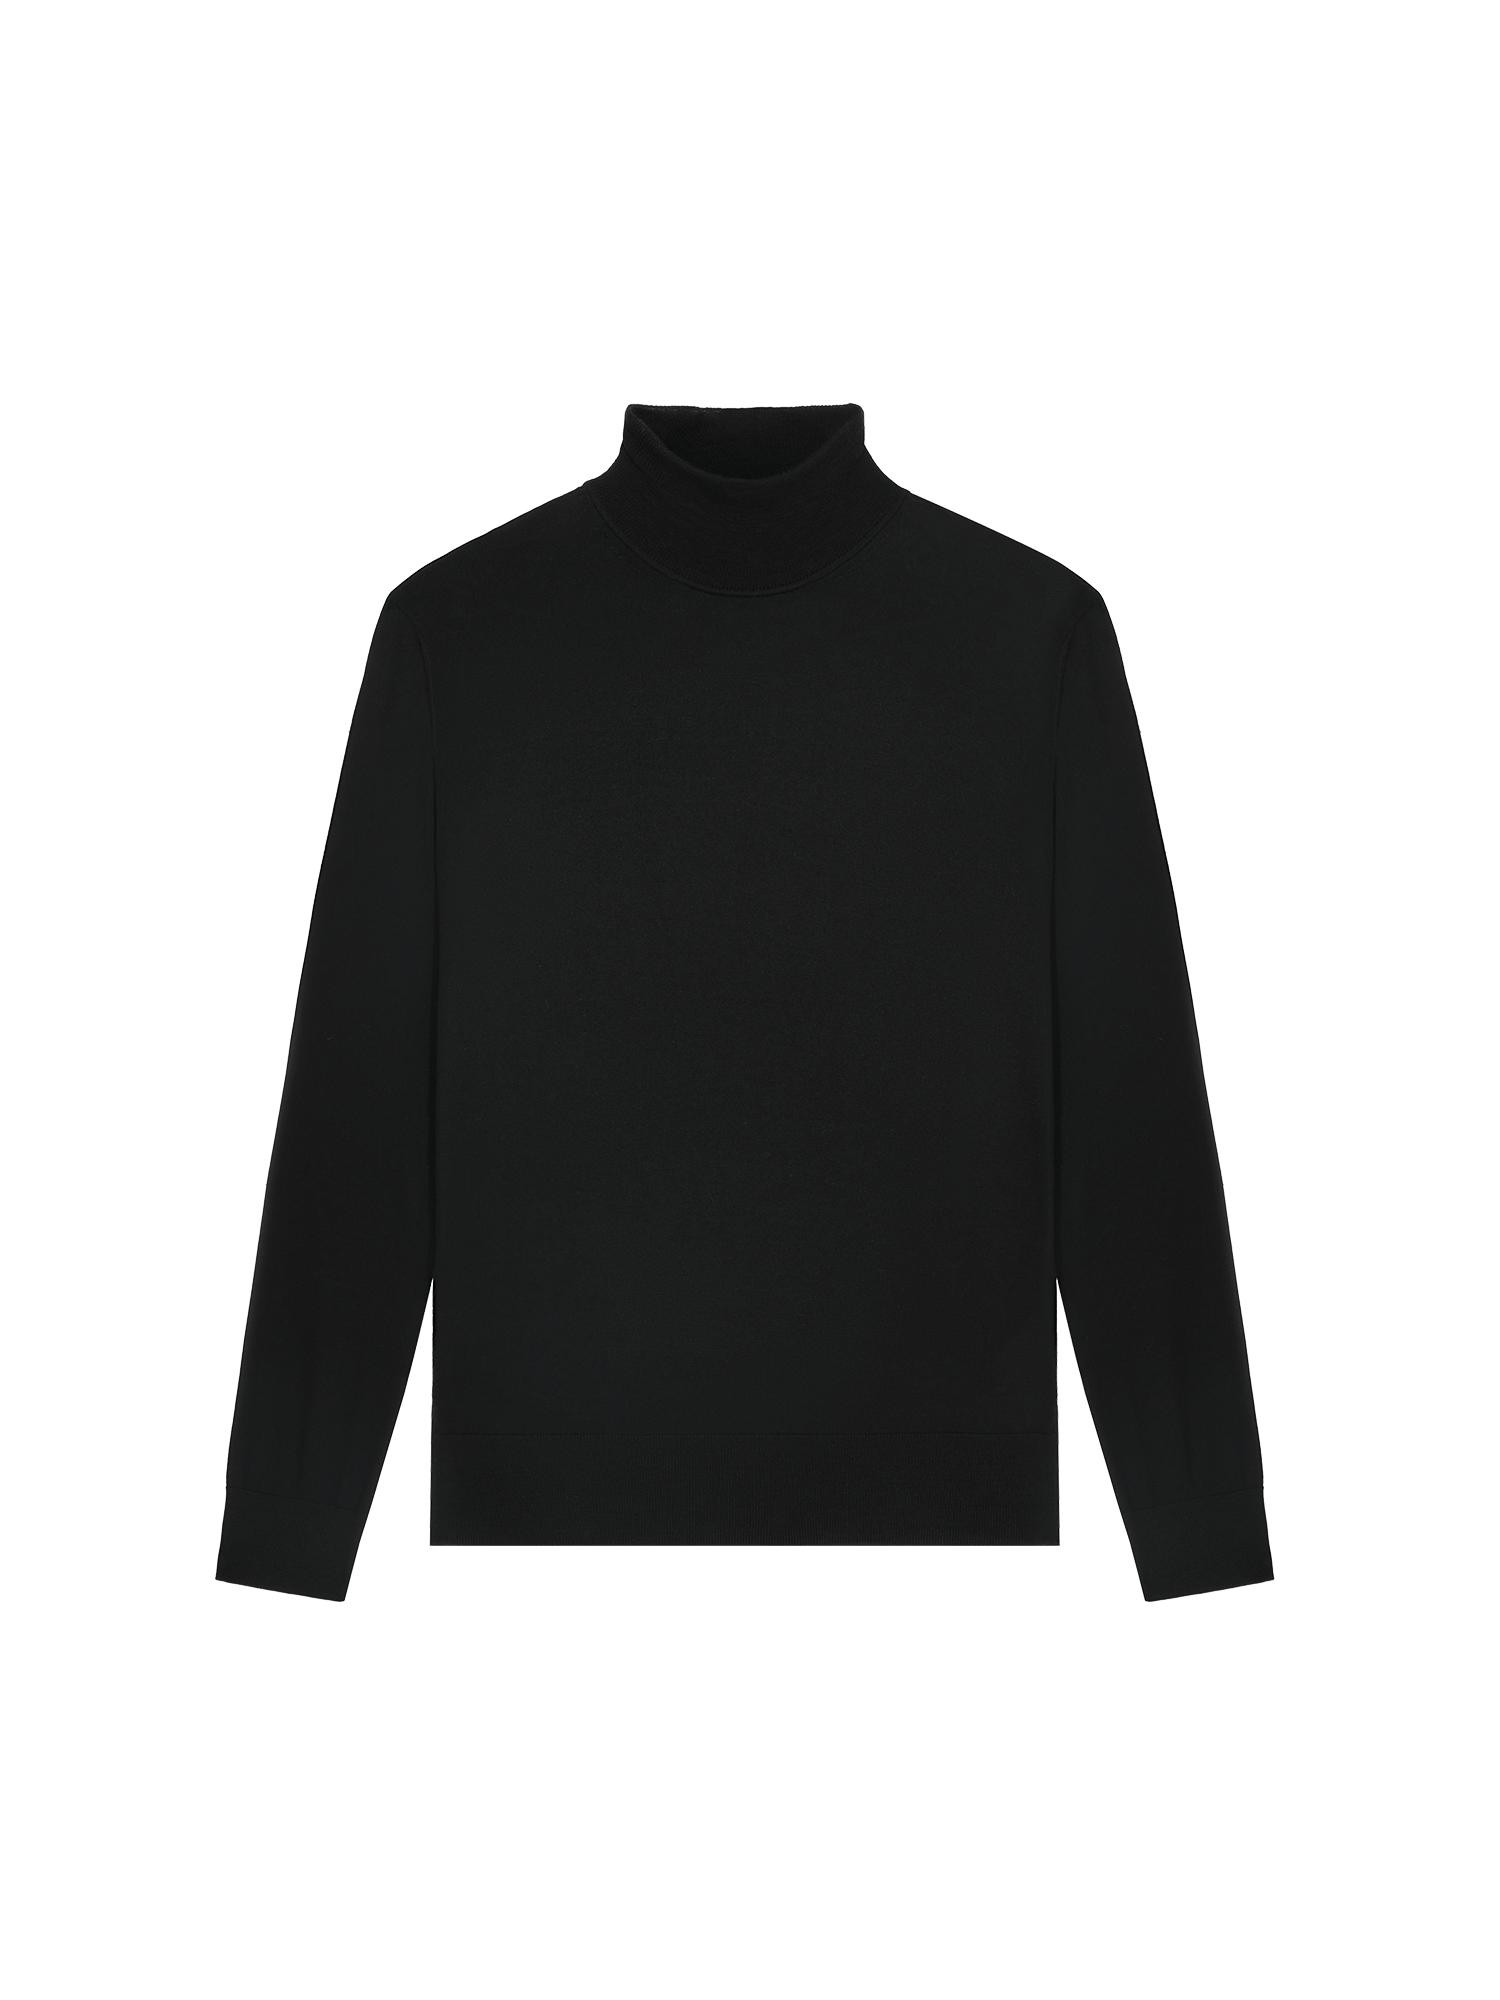 Buy Highlander Black Turtle Neck Sweater for Men Online at Rs.779